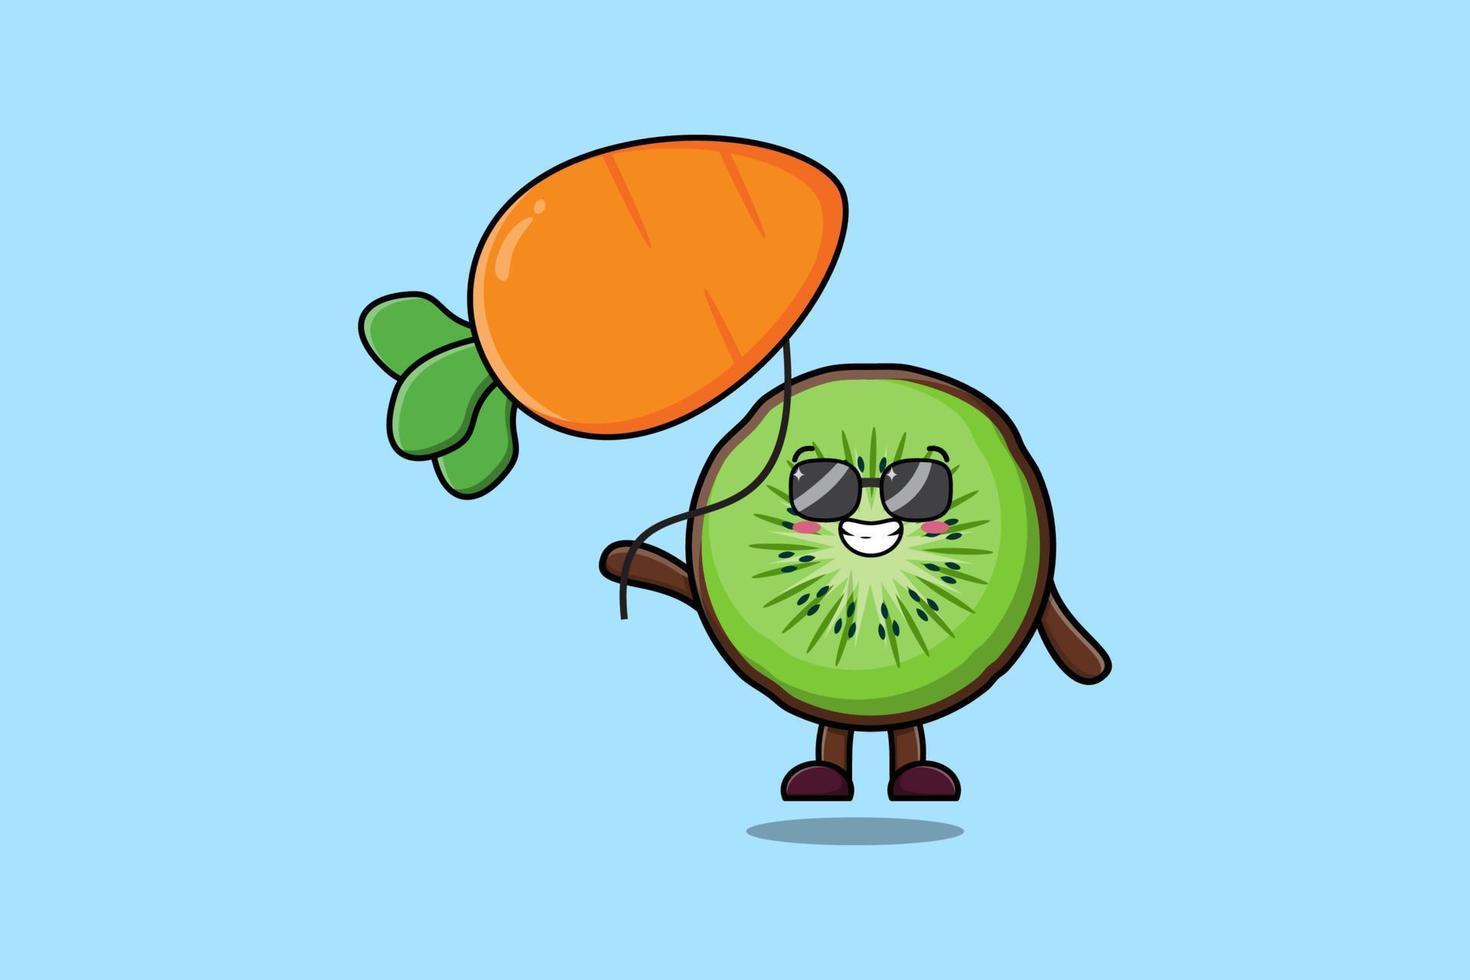 flotador de fruta de kiwi de dibujos animados lindo con globo de zanahoria  13975033 Vector en Vecteezy